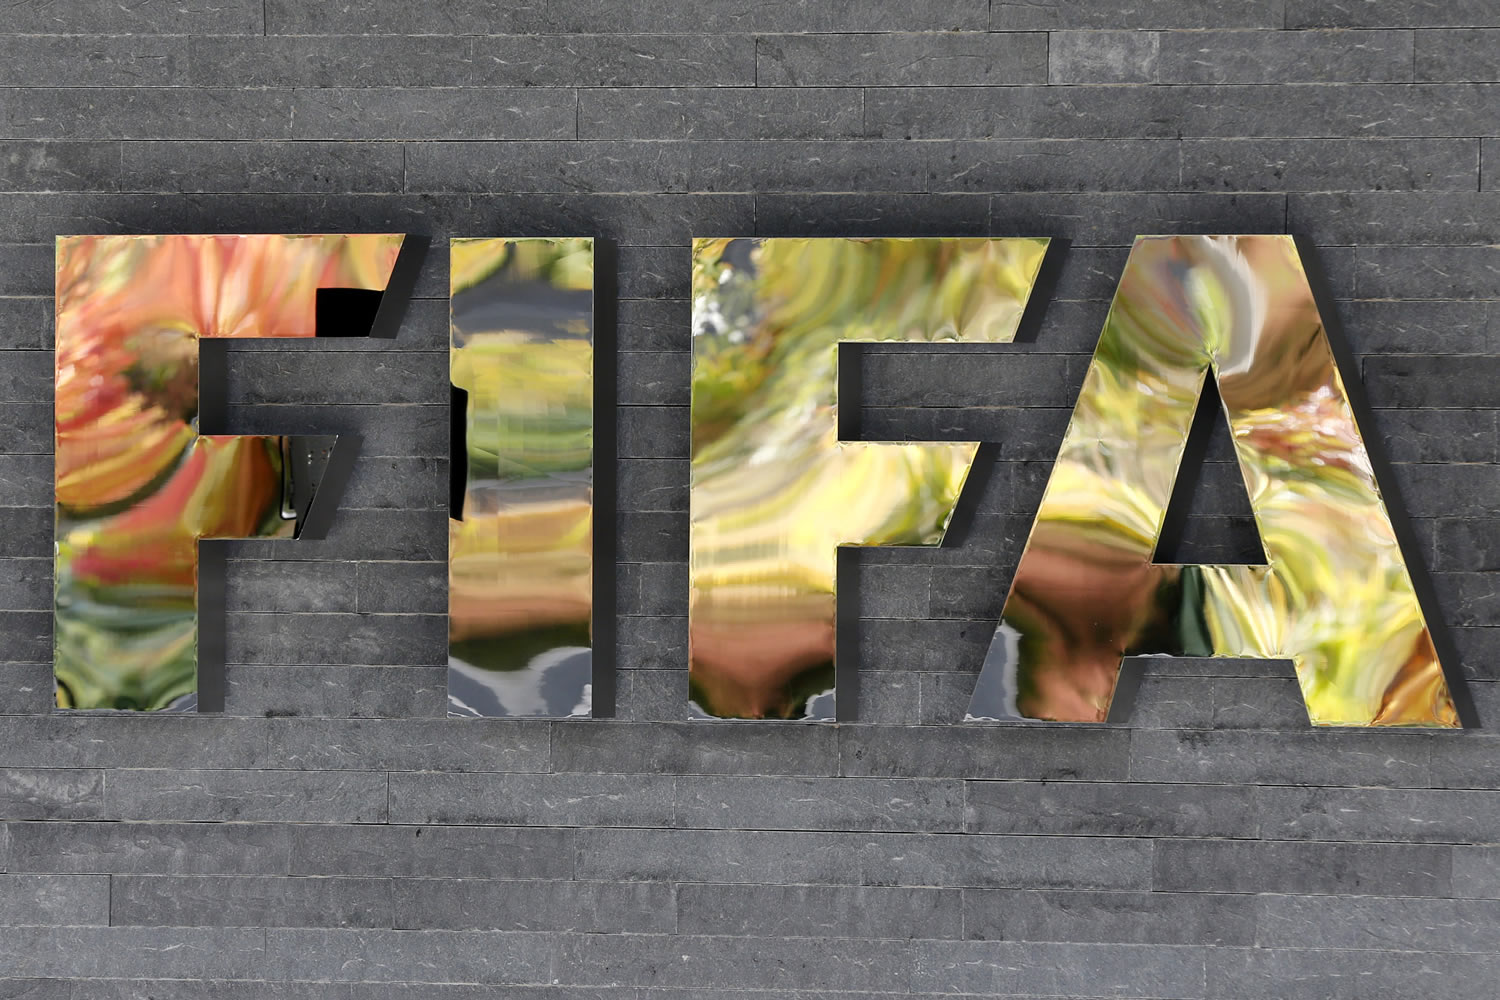 73 millones de euros bloqueados en cuentas de Suiza por el escándalo de la FIFA